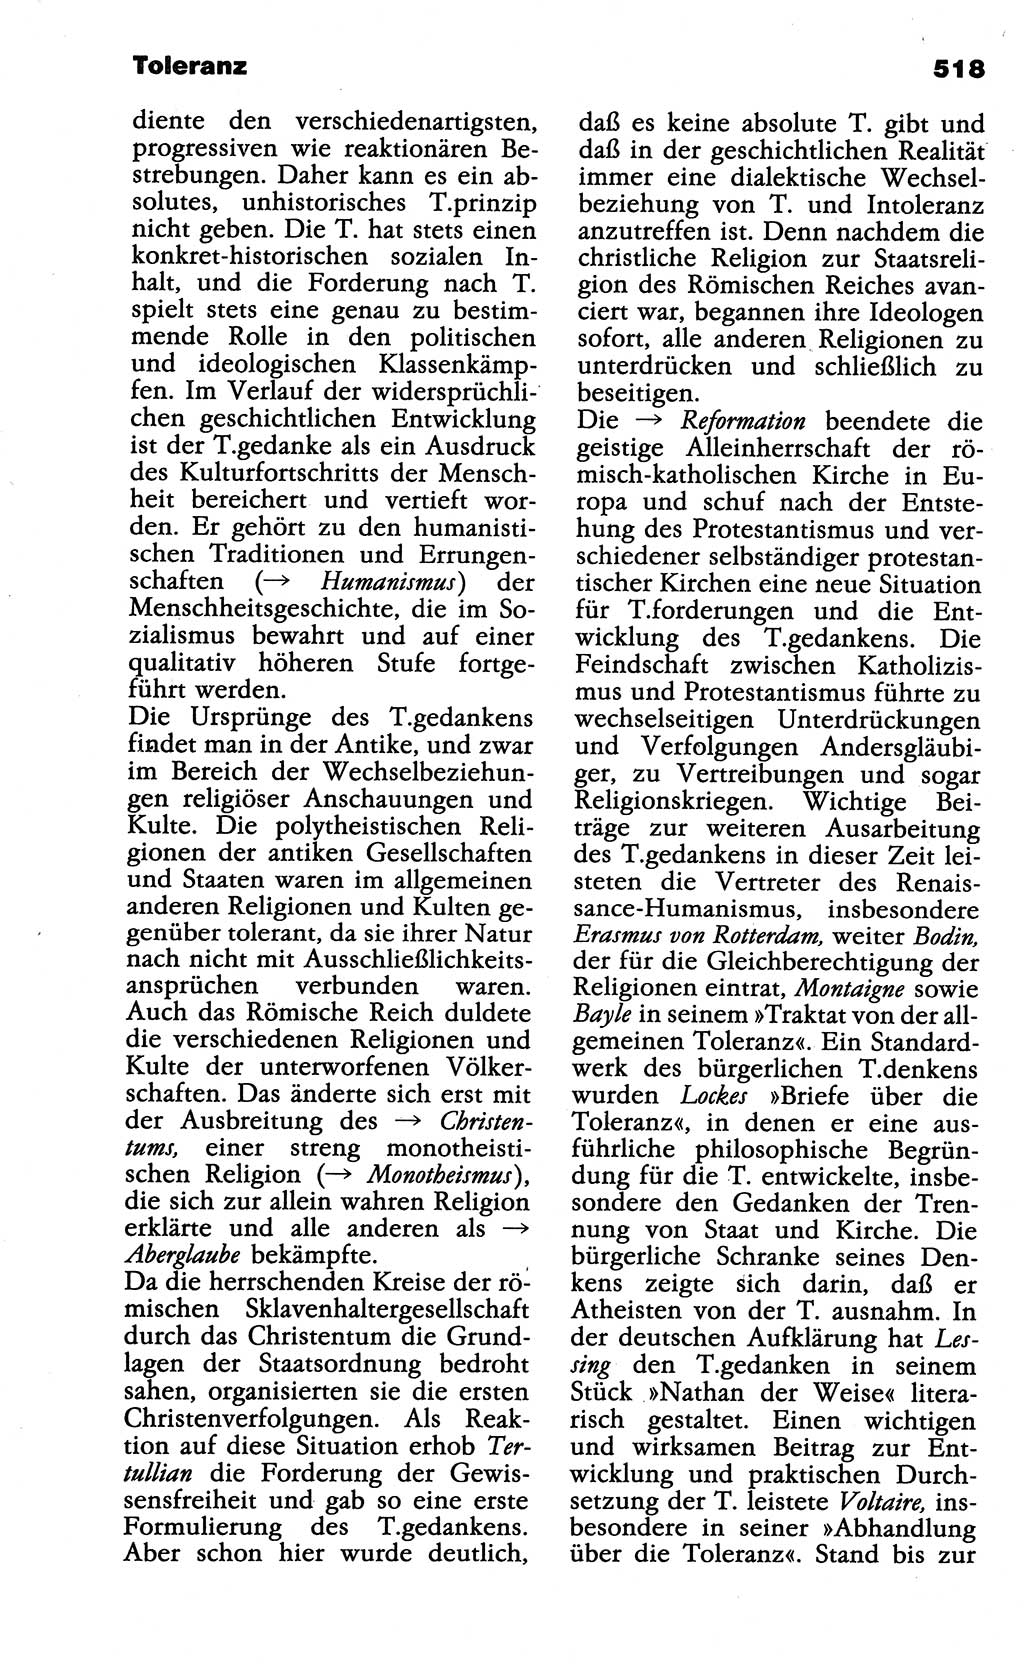 Wörterbuch der marxistisch-leninistischen Philosophie [Deutsche Demokratische Republik (DDR)] 1985, Seite 518 (Wb. ML Phil. DDR 1985, S. 518)